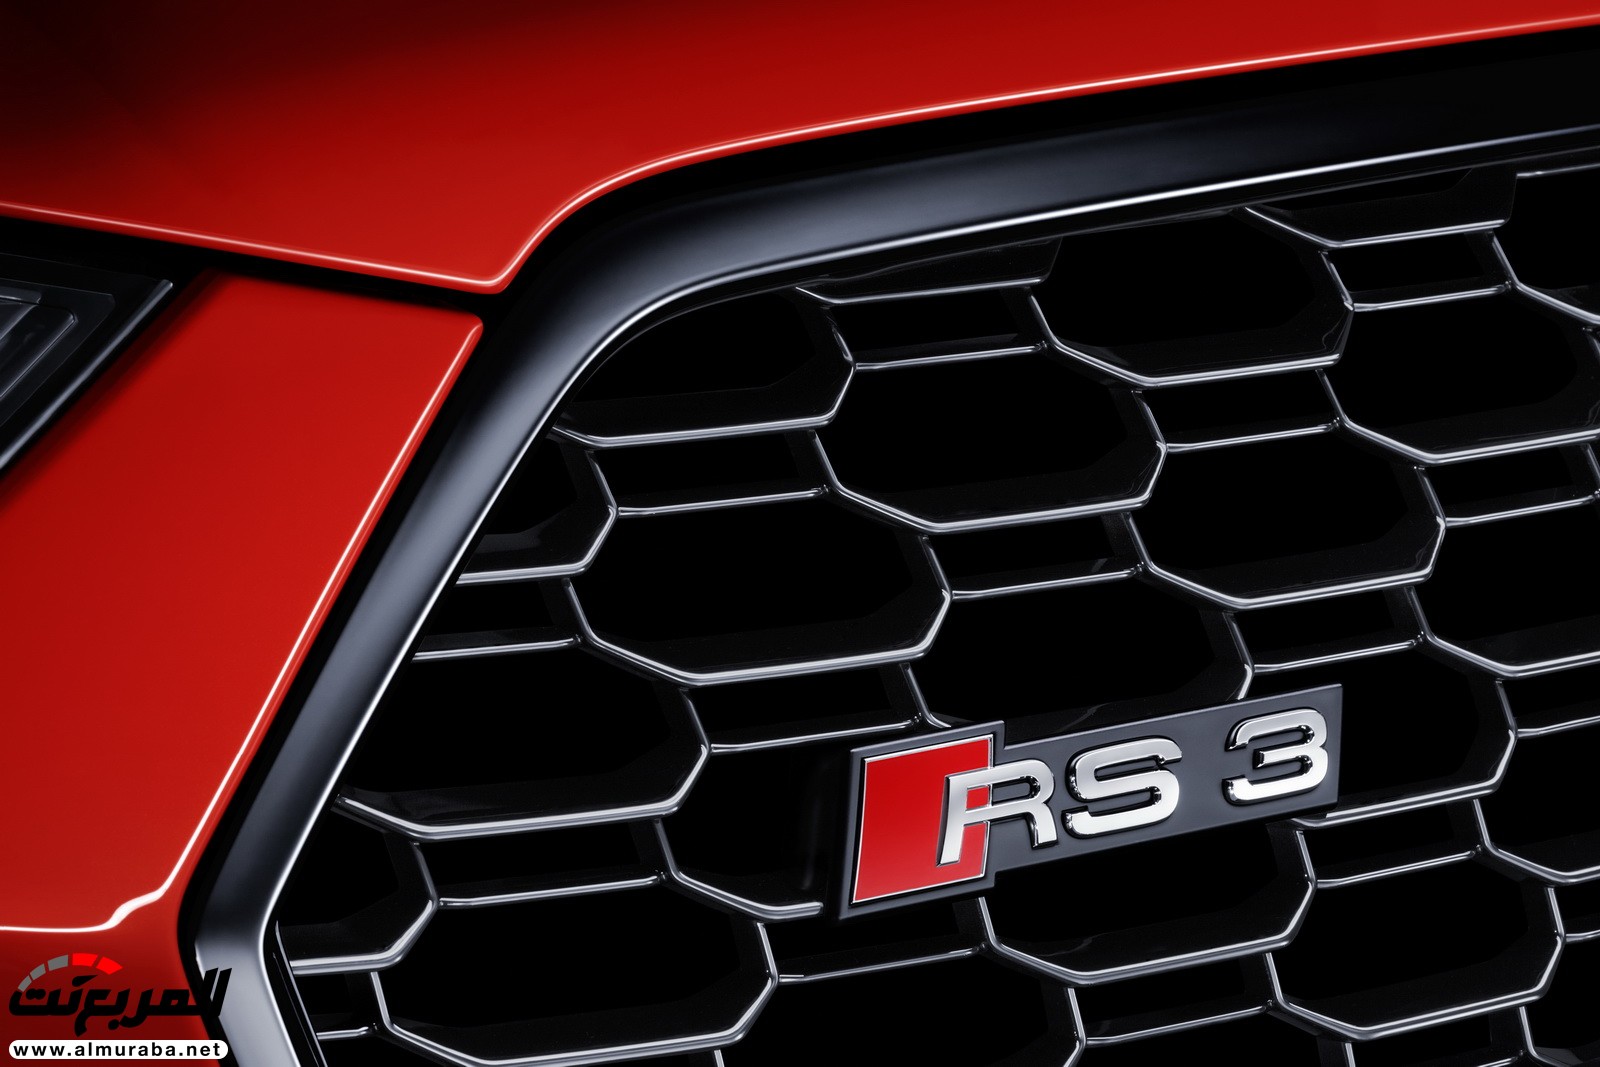 "أودي" تكشف عن RS3 الجديدة كليا 2018 بقوة 395 حصان Audi 46